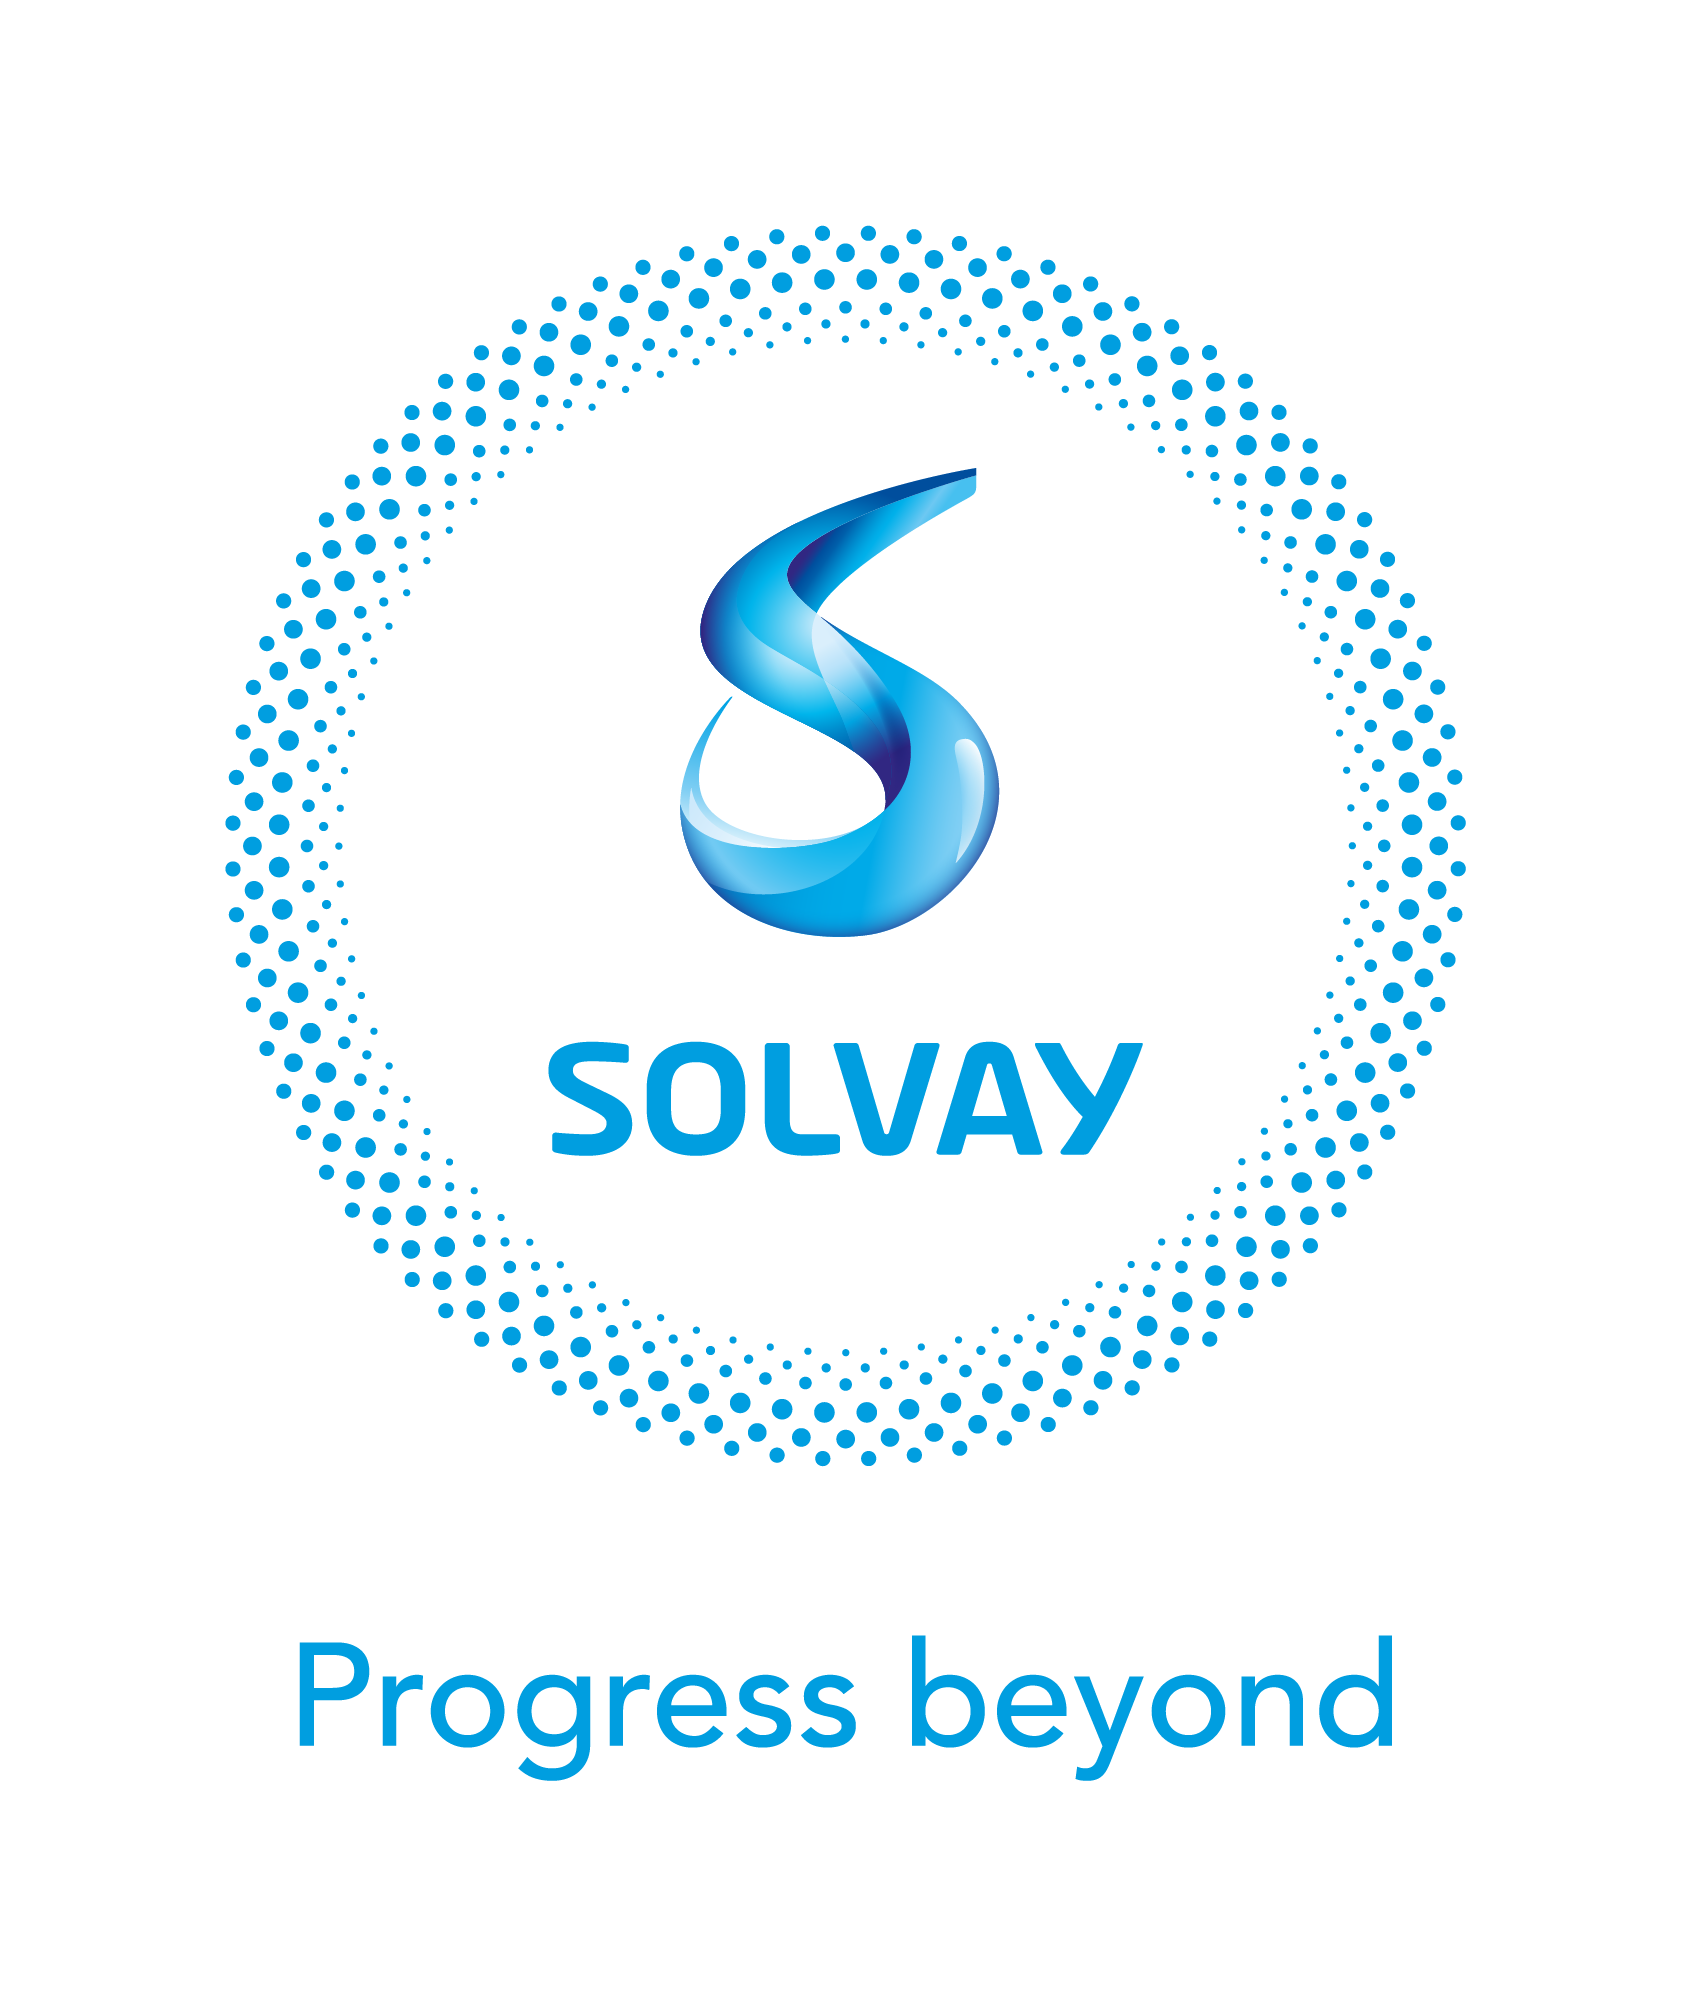 Solvay kondigt toeko